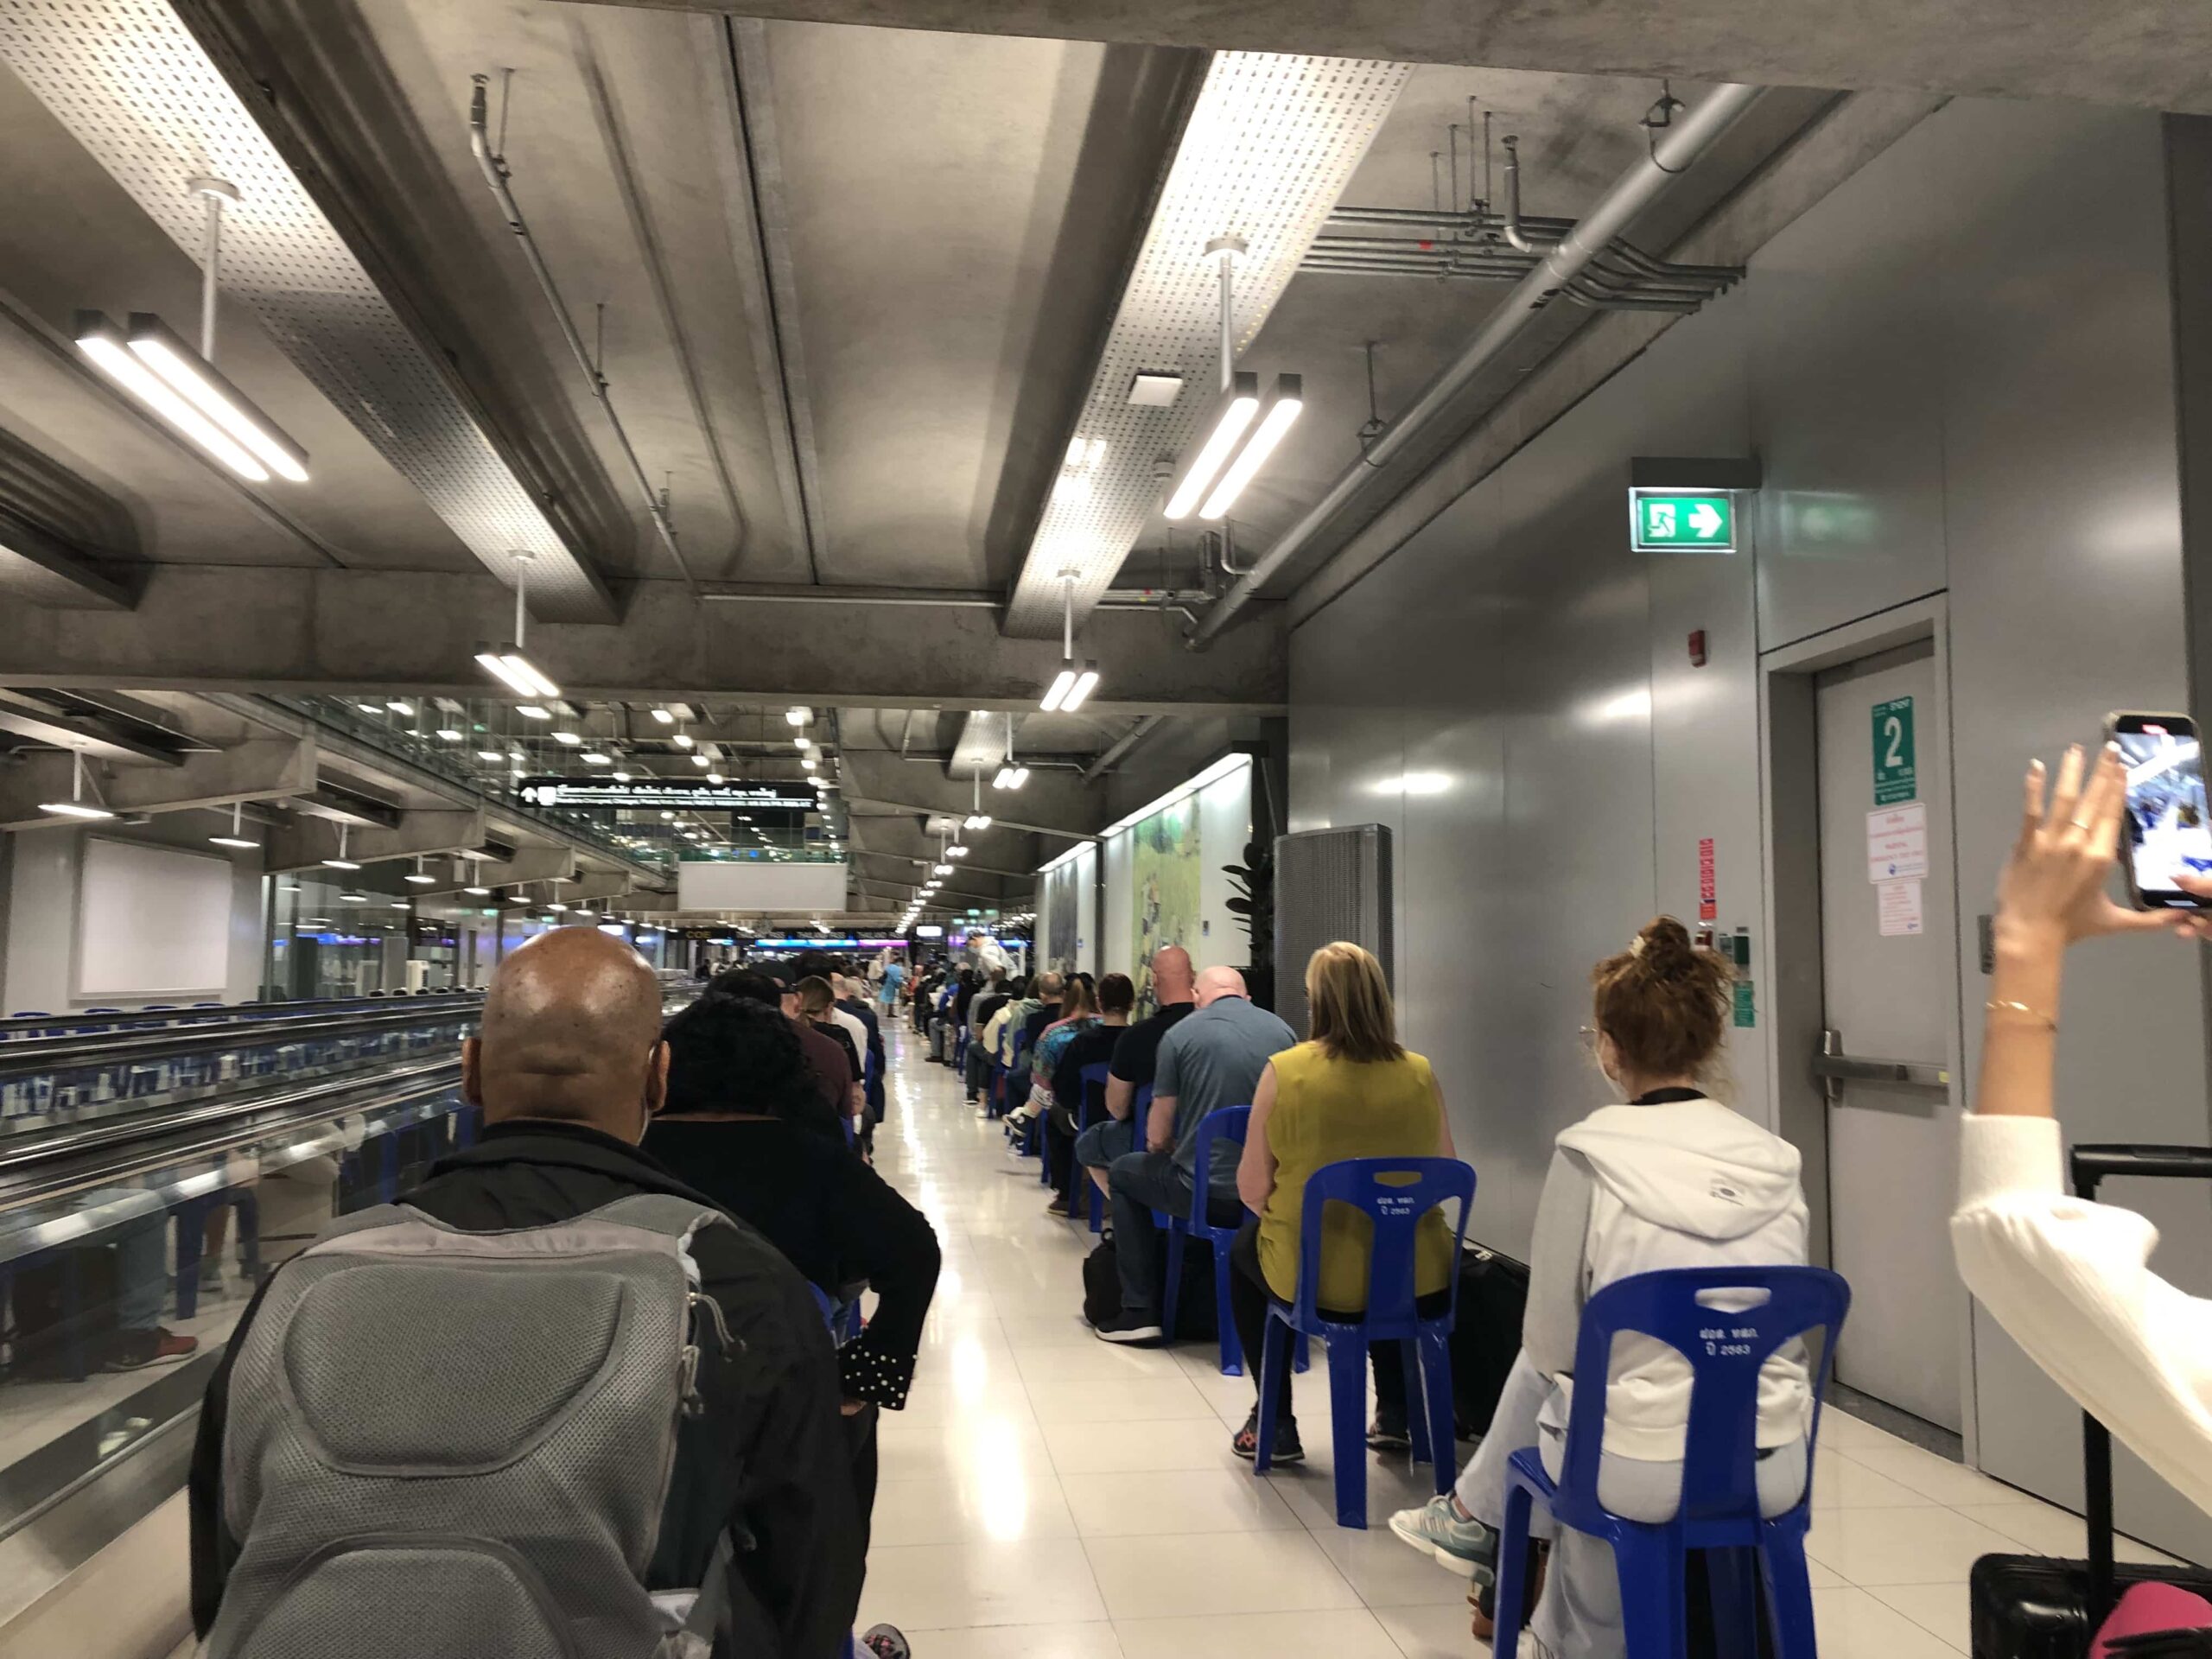 Covid queues at Suvarnabhumi Airport, Bangkok in 2022